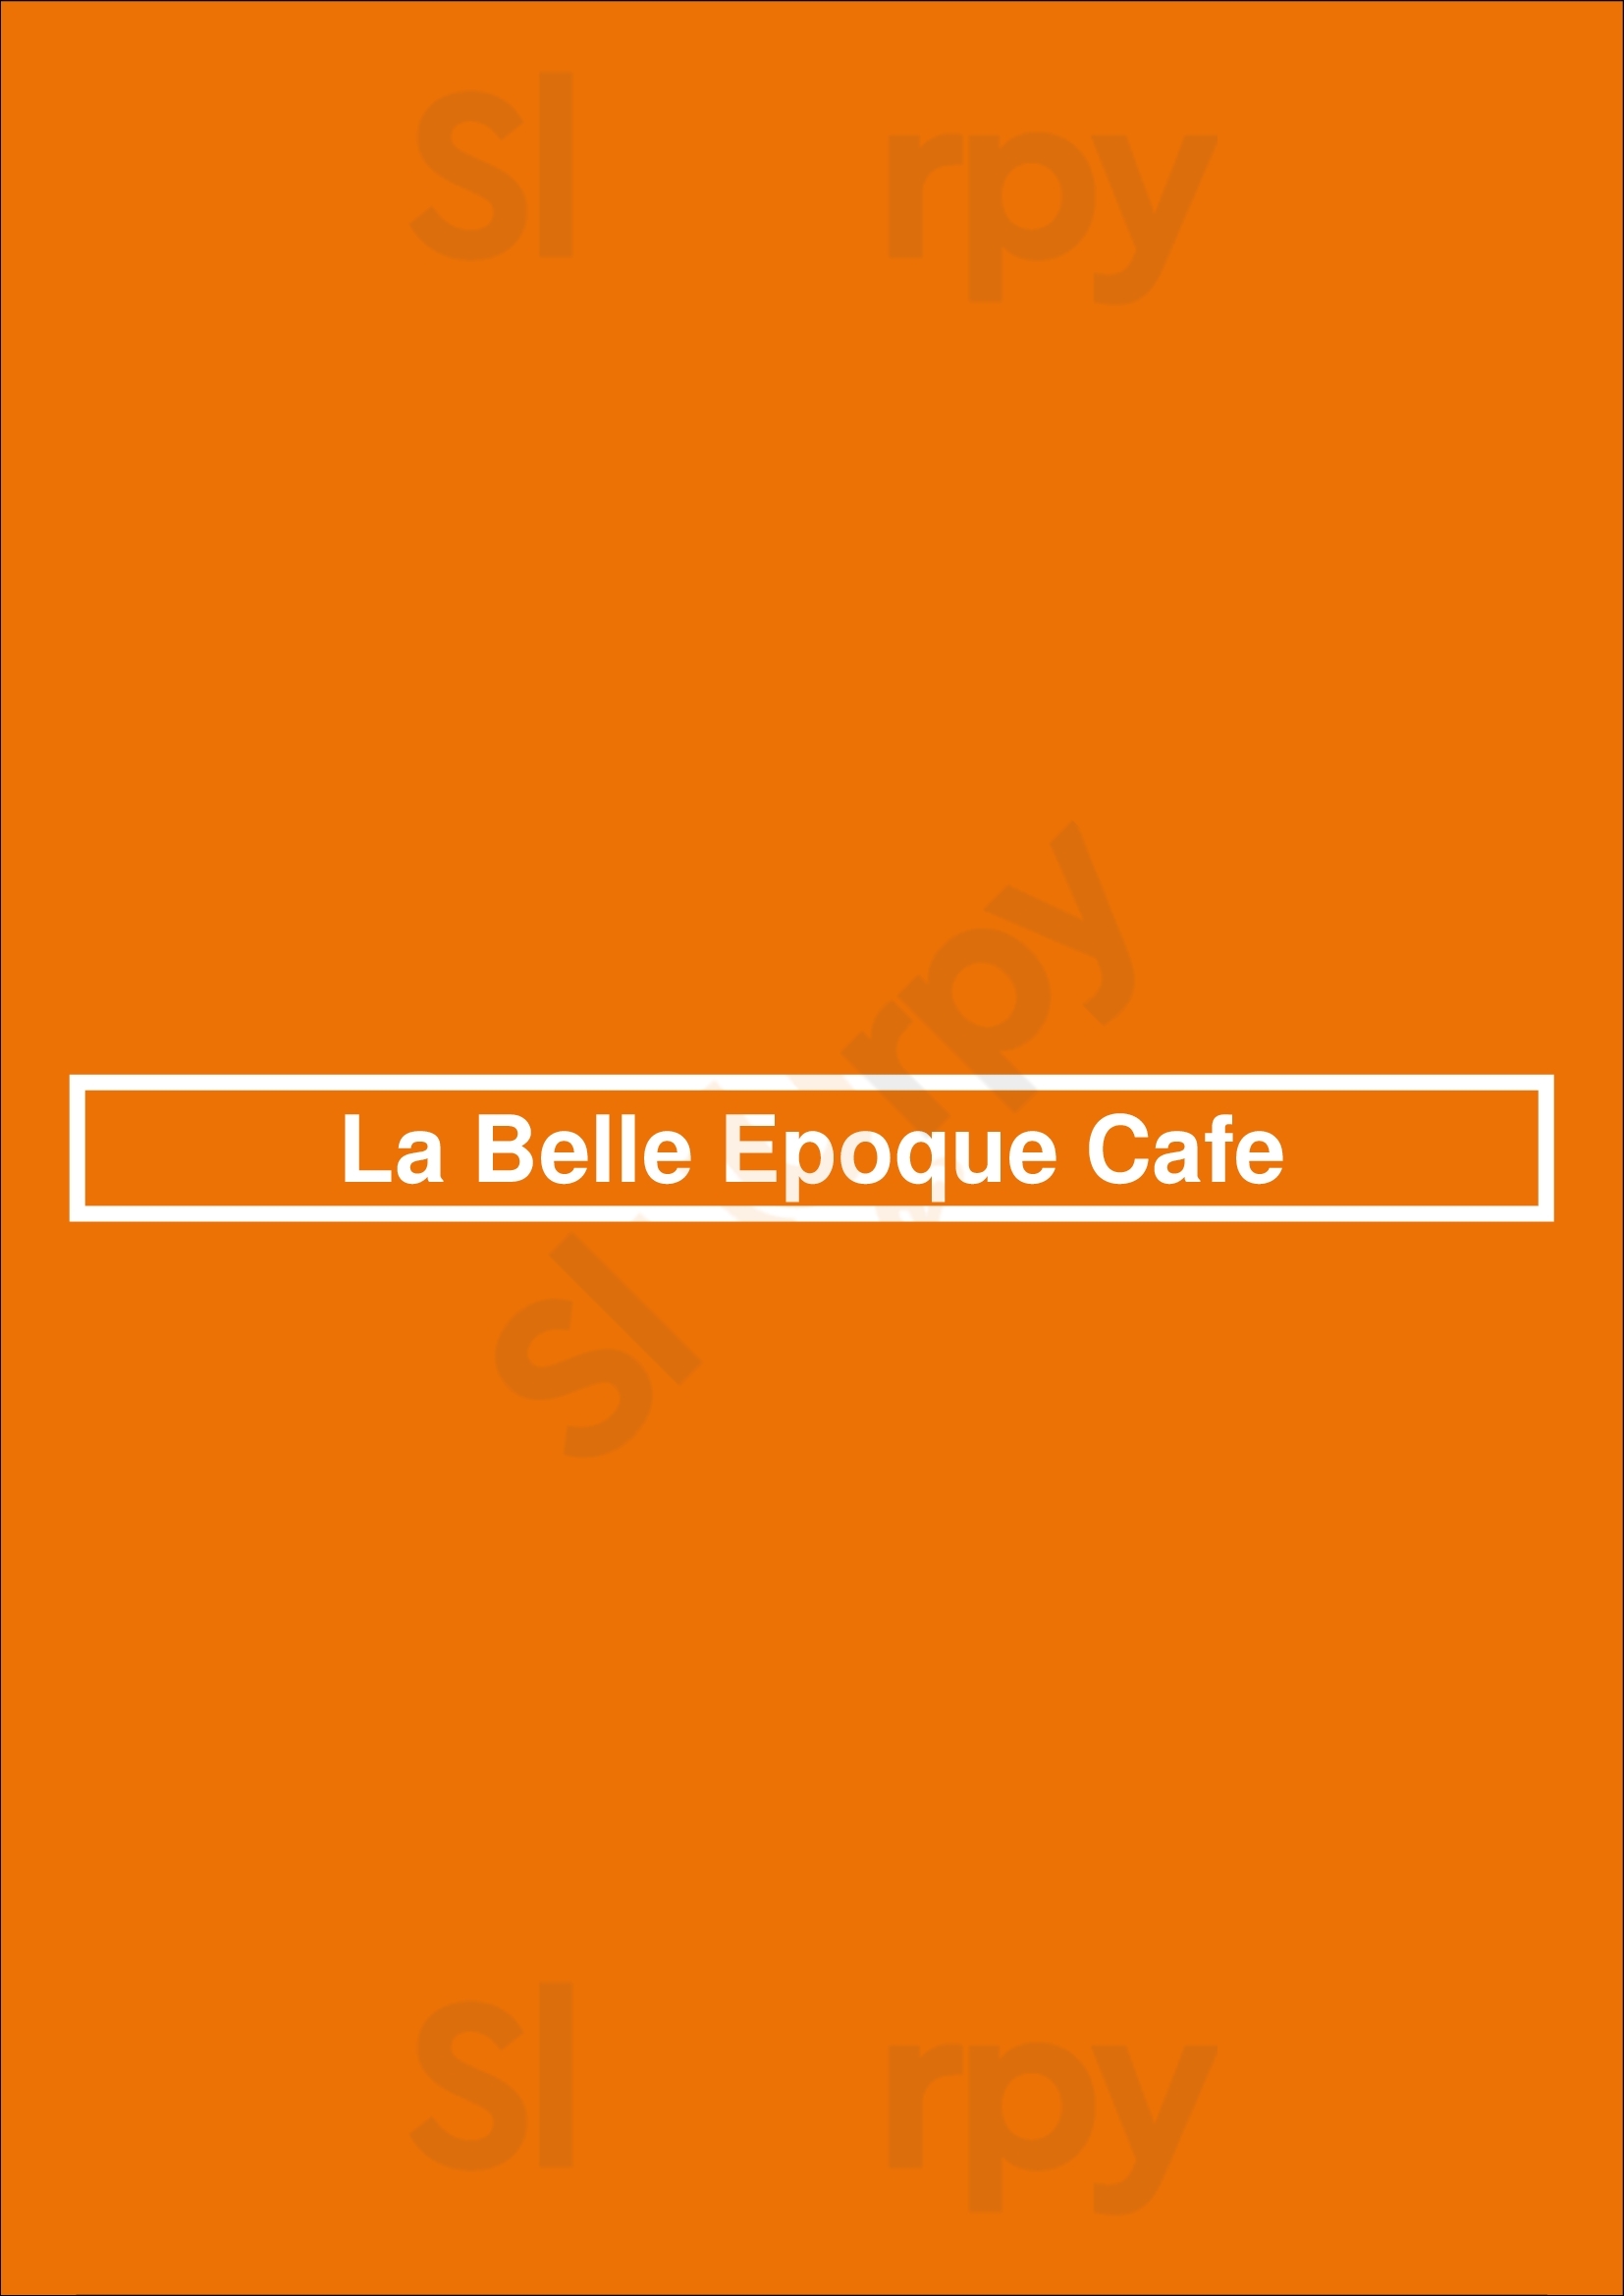 La Belle Epoque Cafe Media Menu - 1